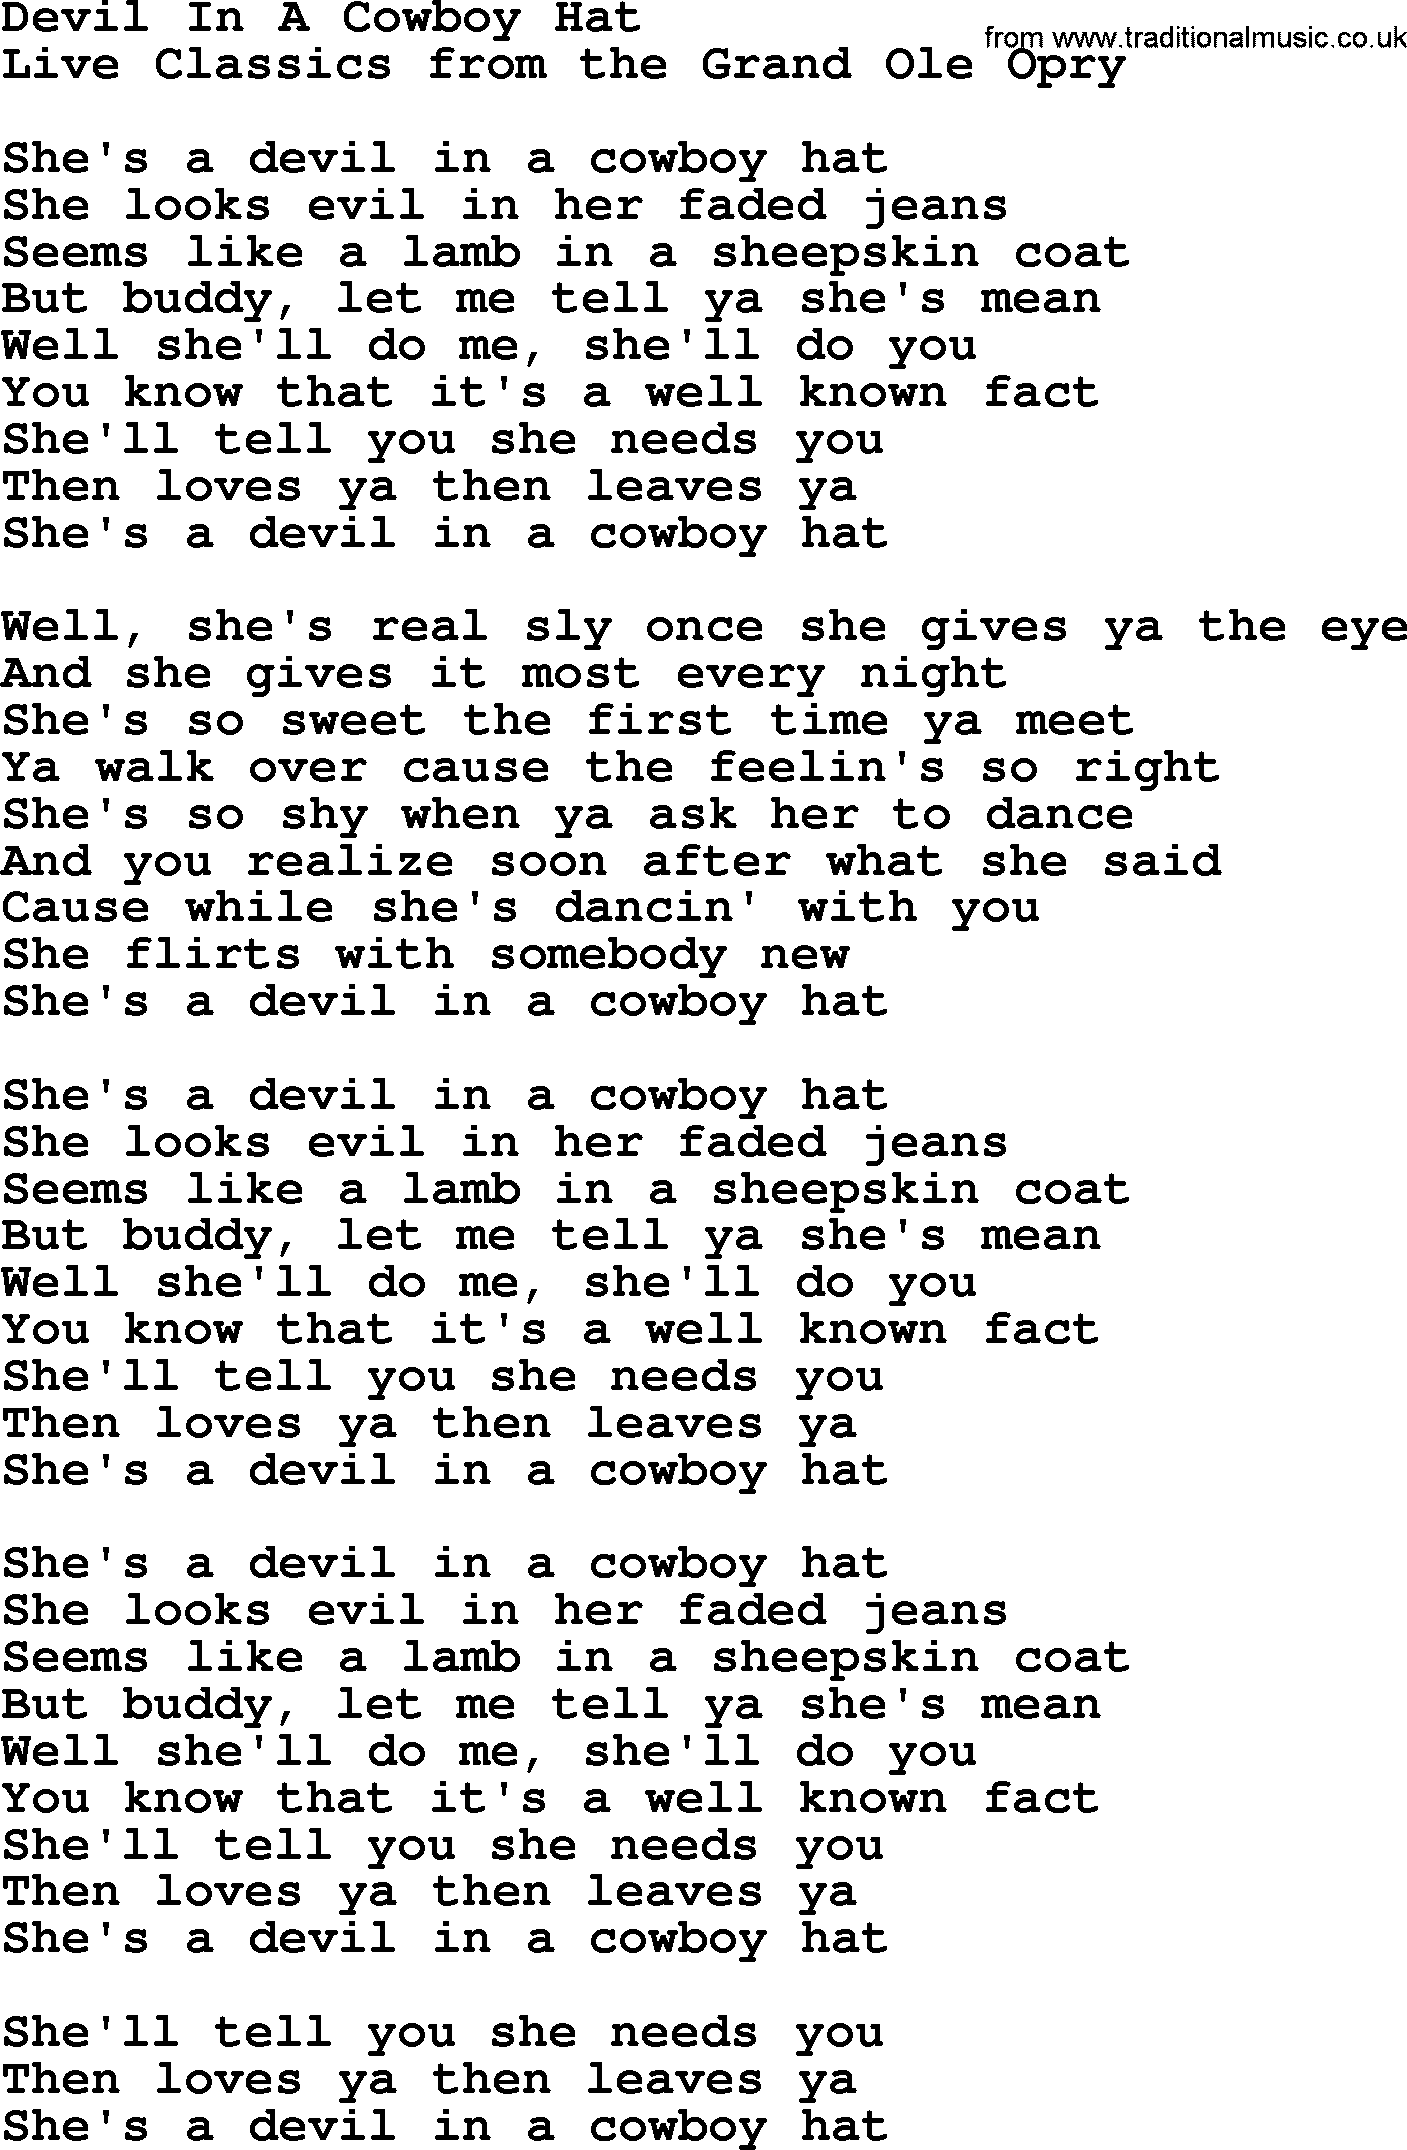 Marty Robbins song: Devil In A Cowboy Hat, lyrics